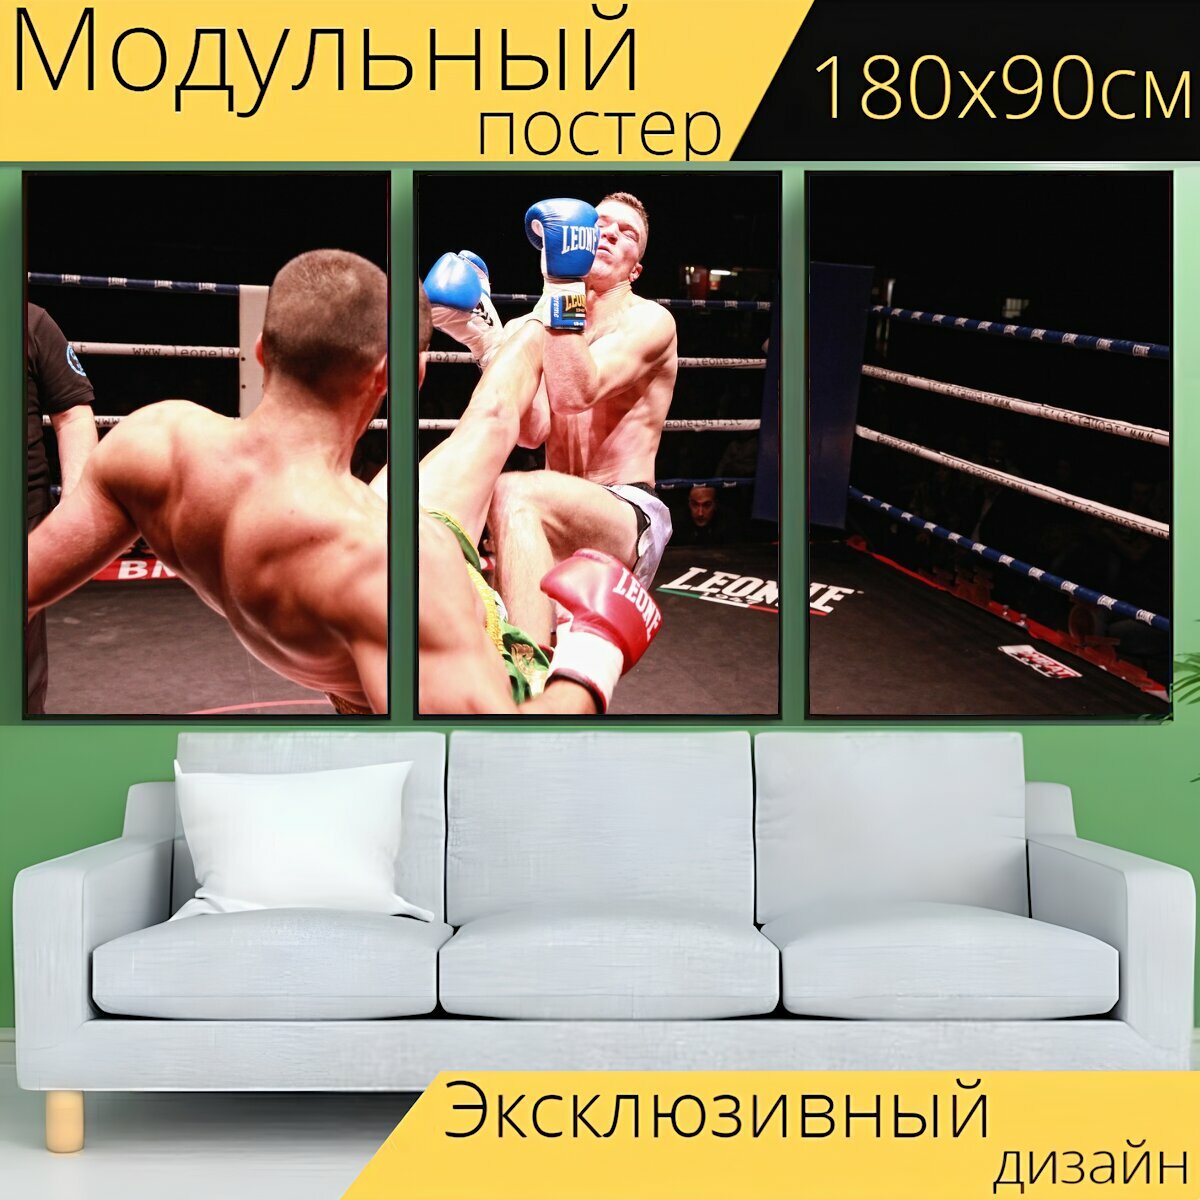 Модульный постер "Заниматься боксом, кик бокс, борьба" 180 x 90 см. для интерьера